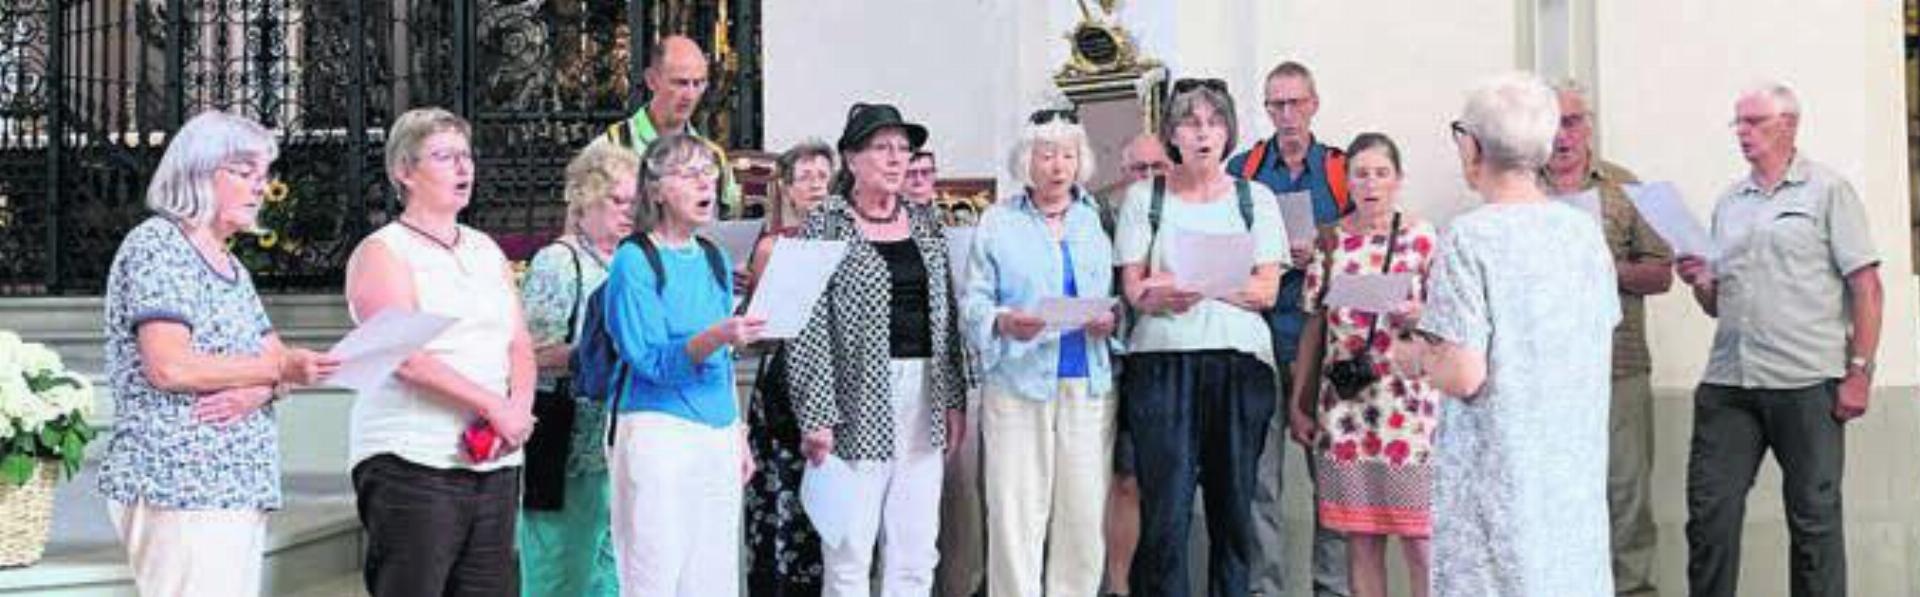 Der Gemischte Chor durfte in der Klosterkirche singen. Bild: zg